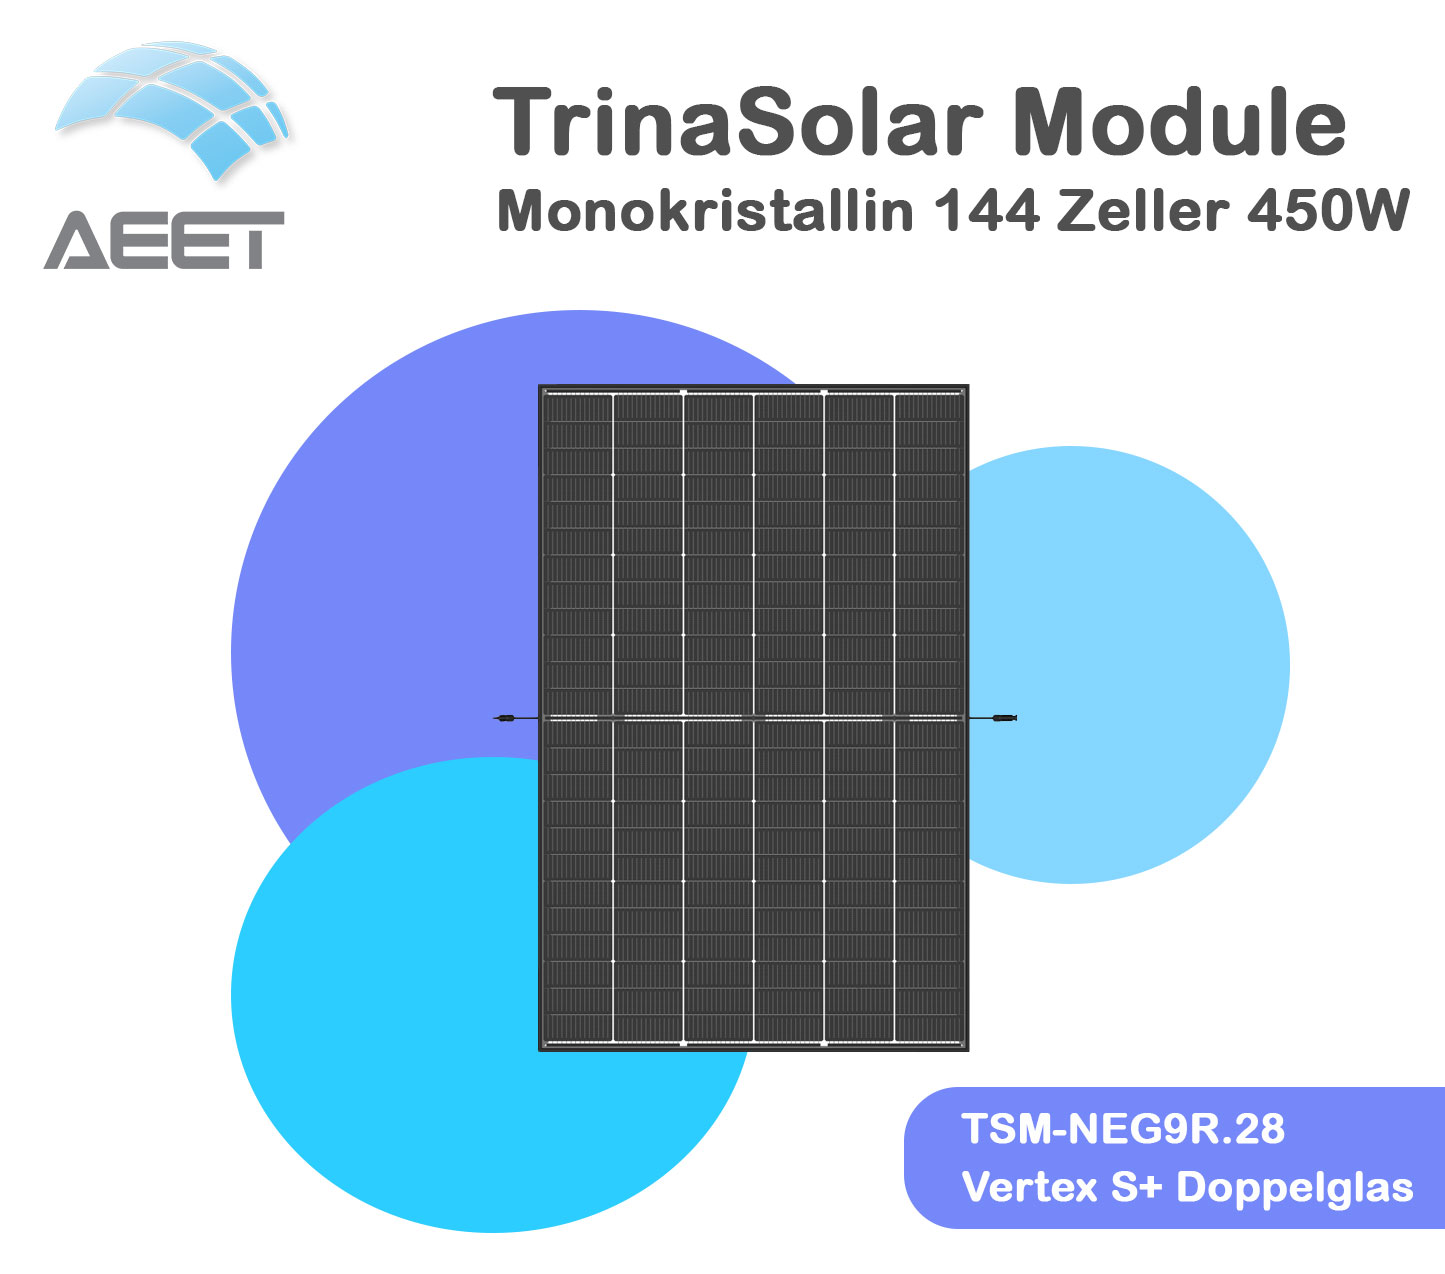 Solarmodule Trina 450 TSM-NEG9R.28 Vertex S+ Doppelglas